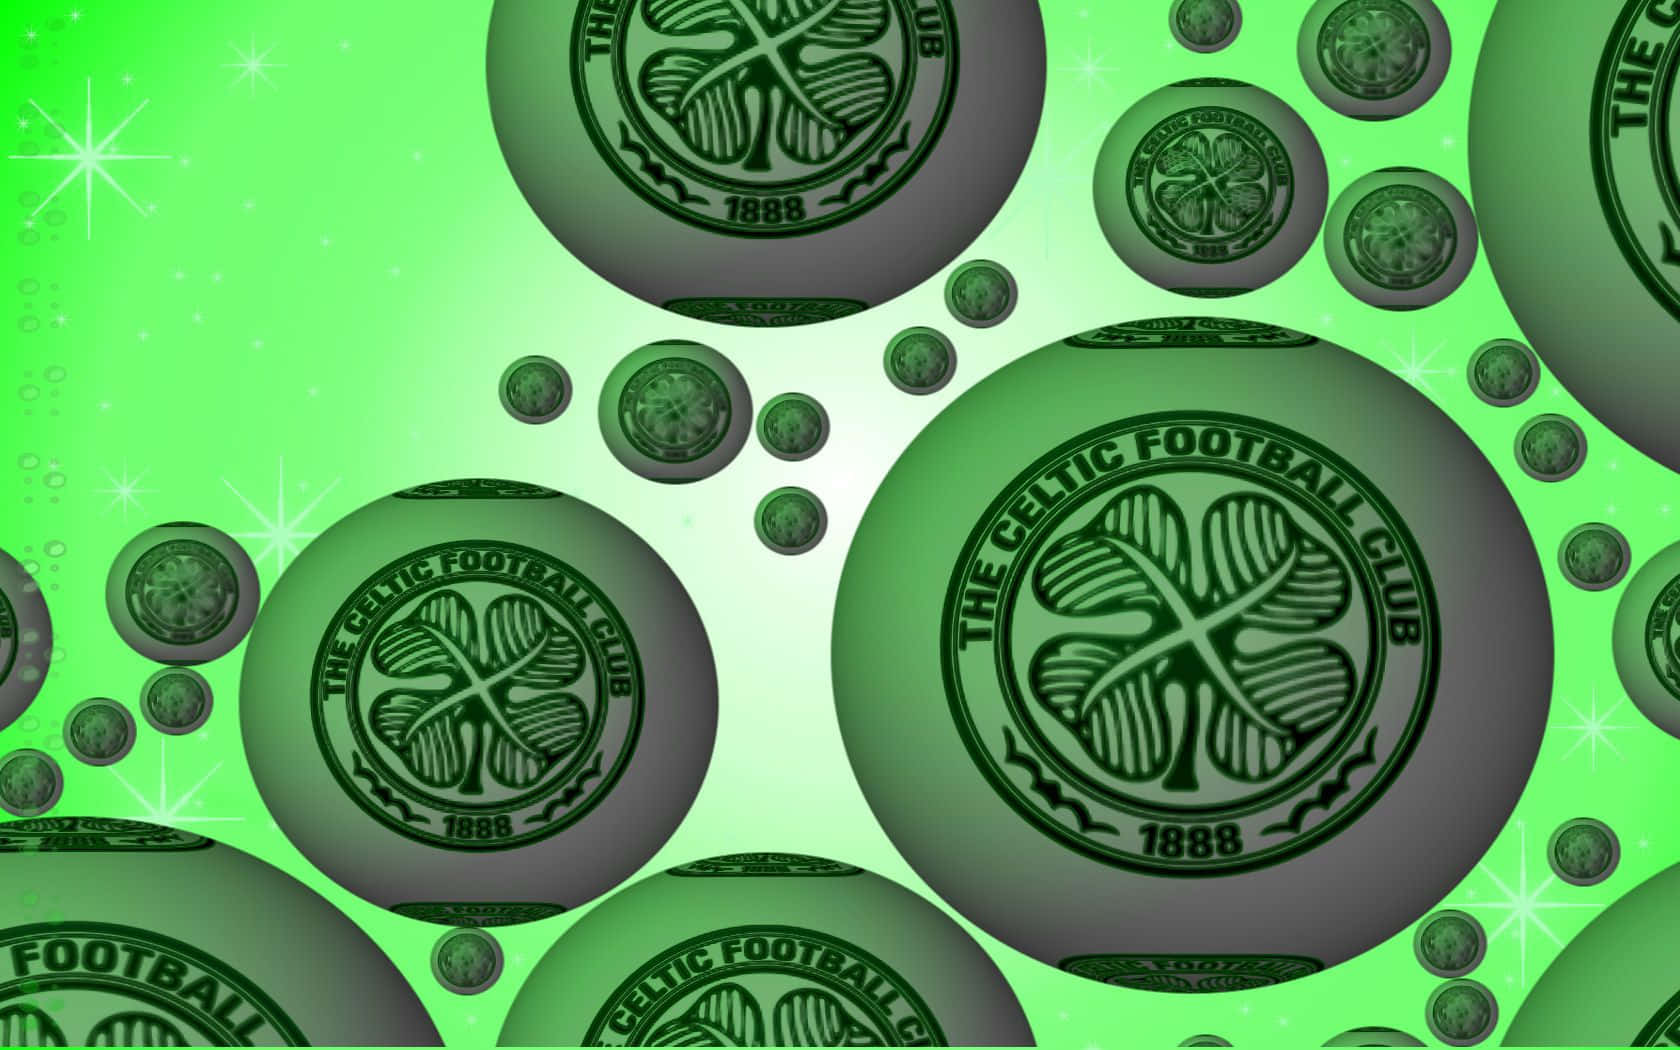 Vis din stolthed ved at bære Celtiske FC's ikoniske grønne og hvide. Wallpaper